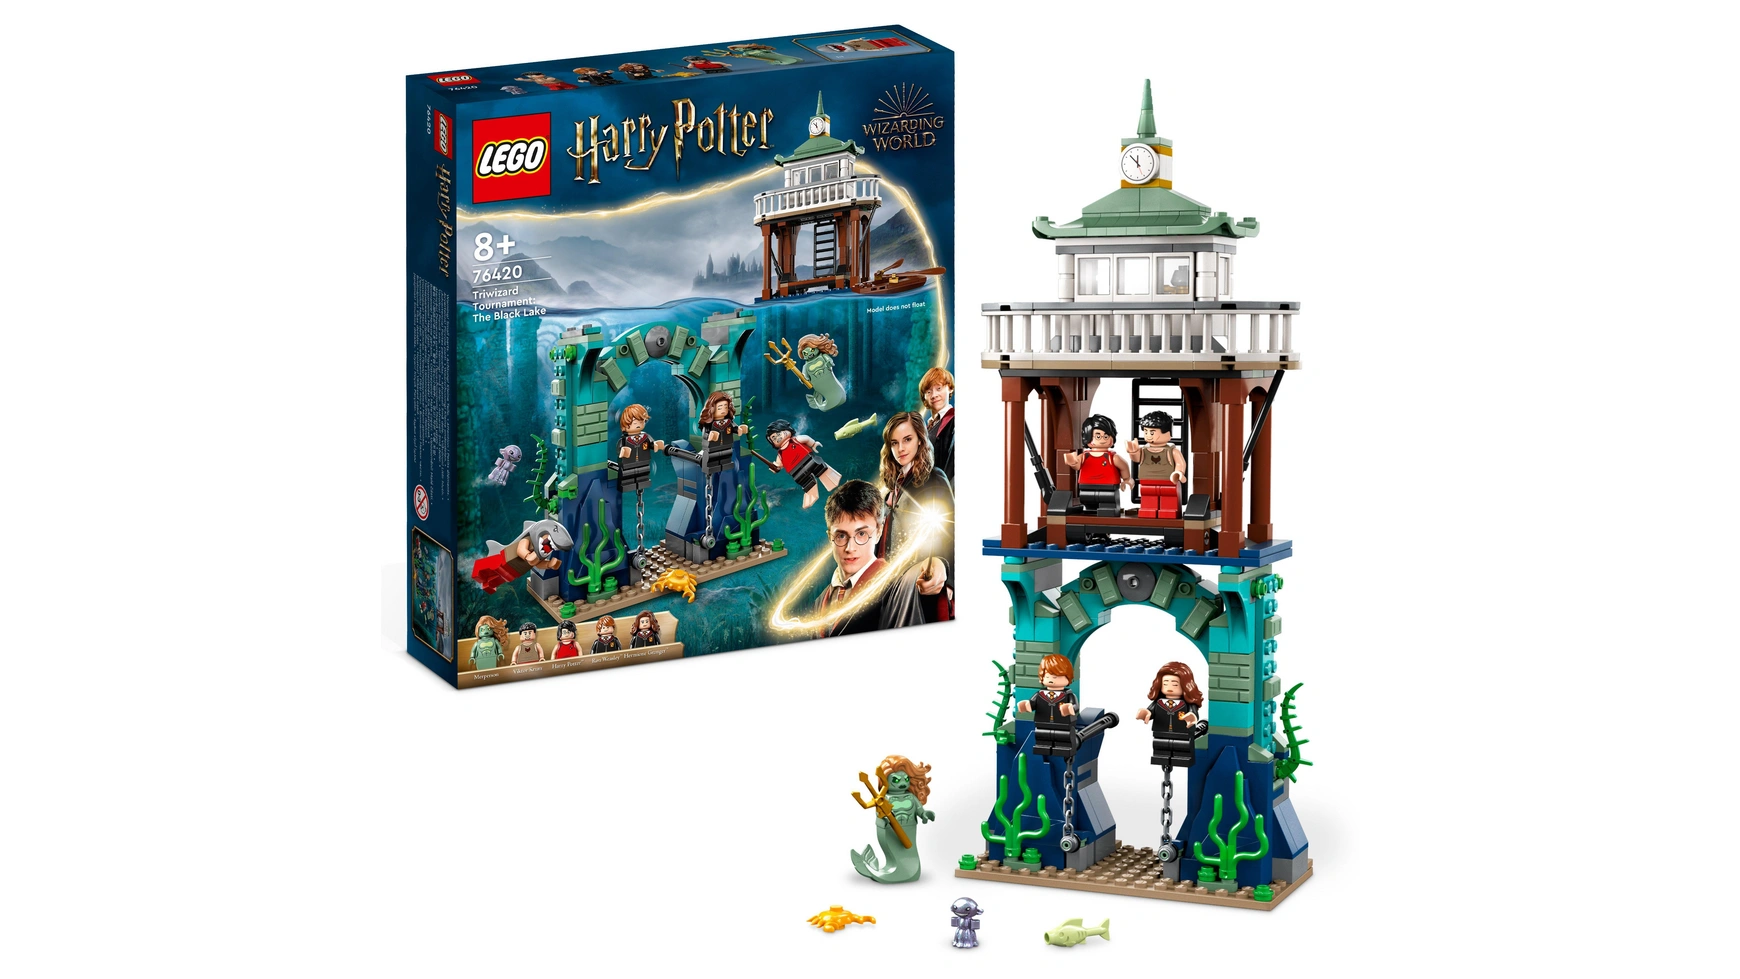 Lego Harry Potter Турнир трех волшебников: Черное озеро конструктор lego harry potter 4708 хогвартс экспресс 410 дет